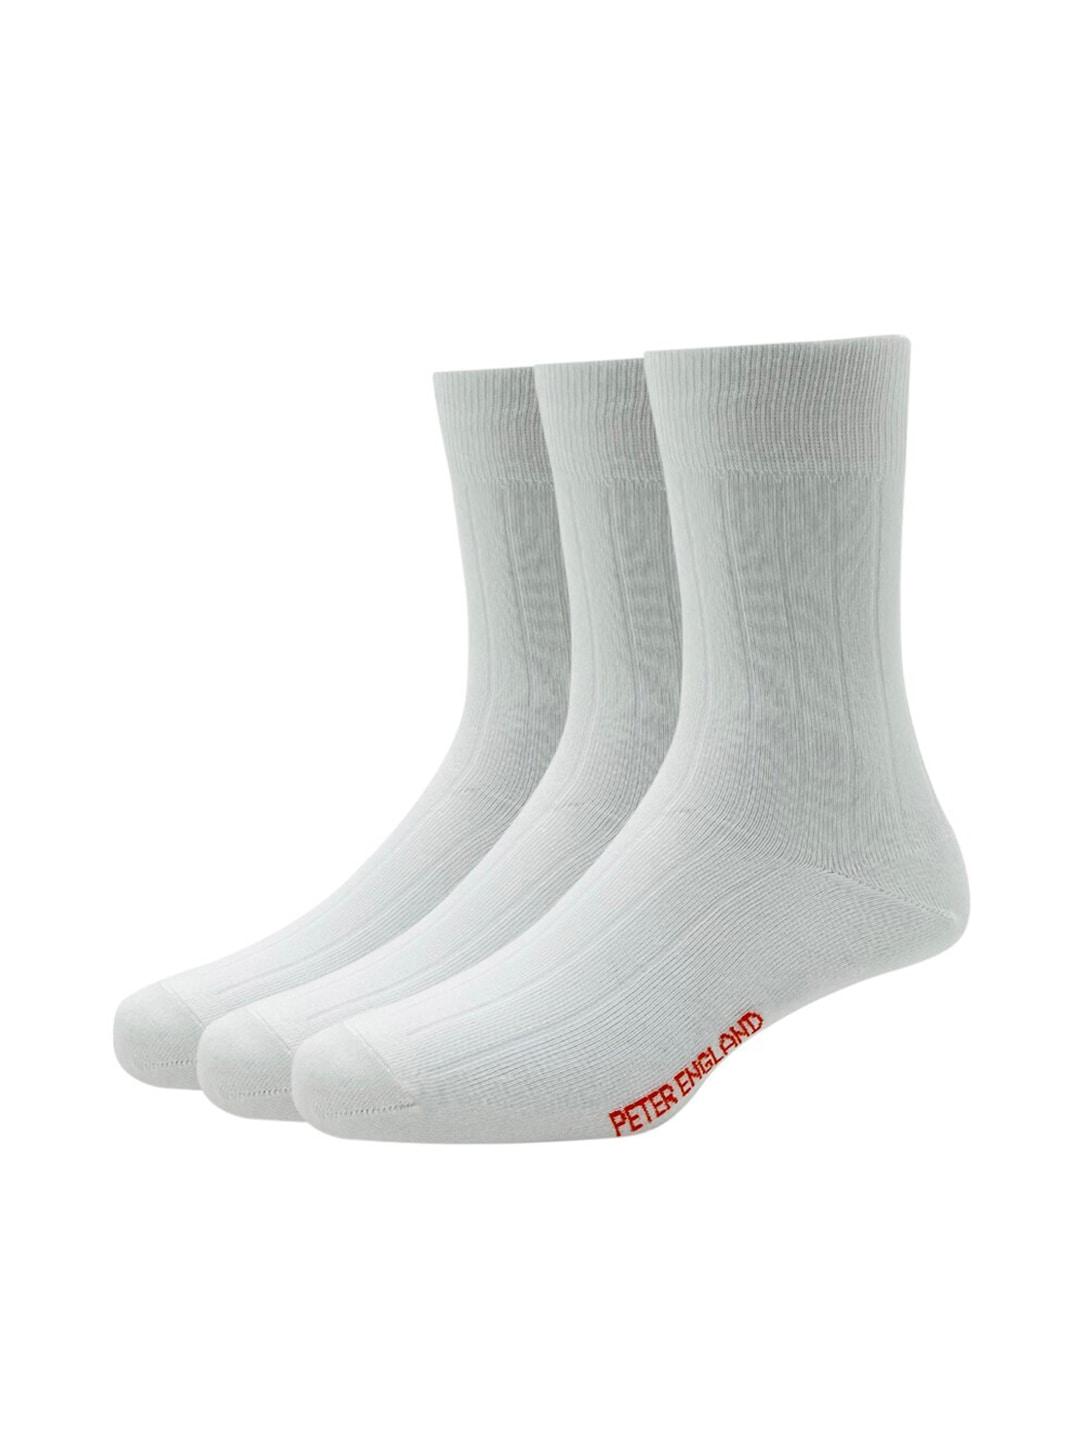 peter england men white pack of 3 cotton full length socks